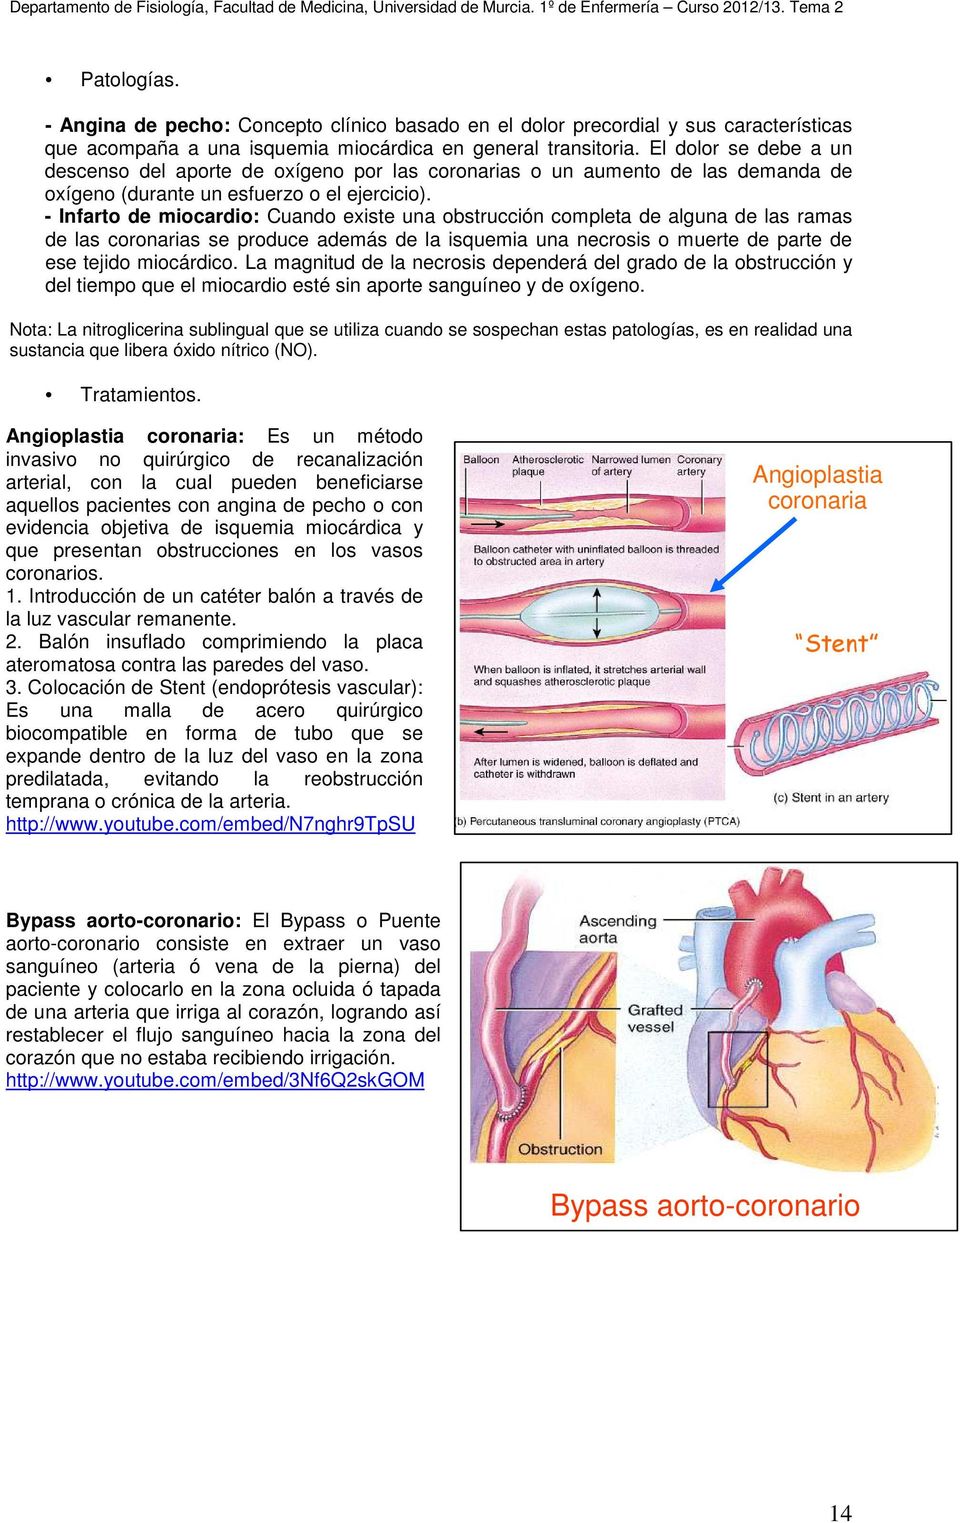 - Infarto de miocardio: Cuando existe una obstrucción completa de alguna de las ramas de las coronarias se produce además de la isquemia una necrosis o muerte de parte de ese tejido miocárdico.